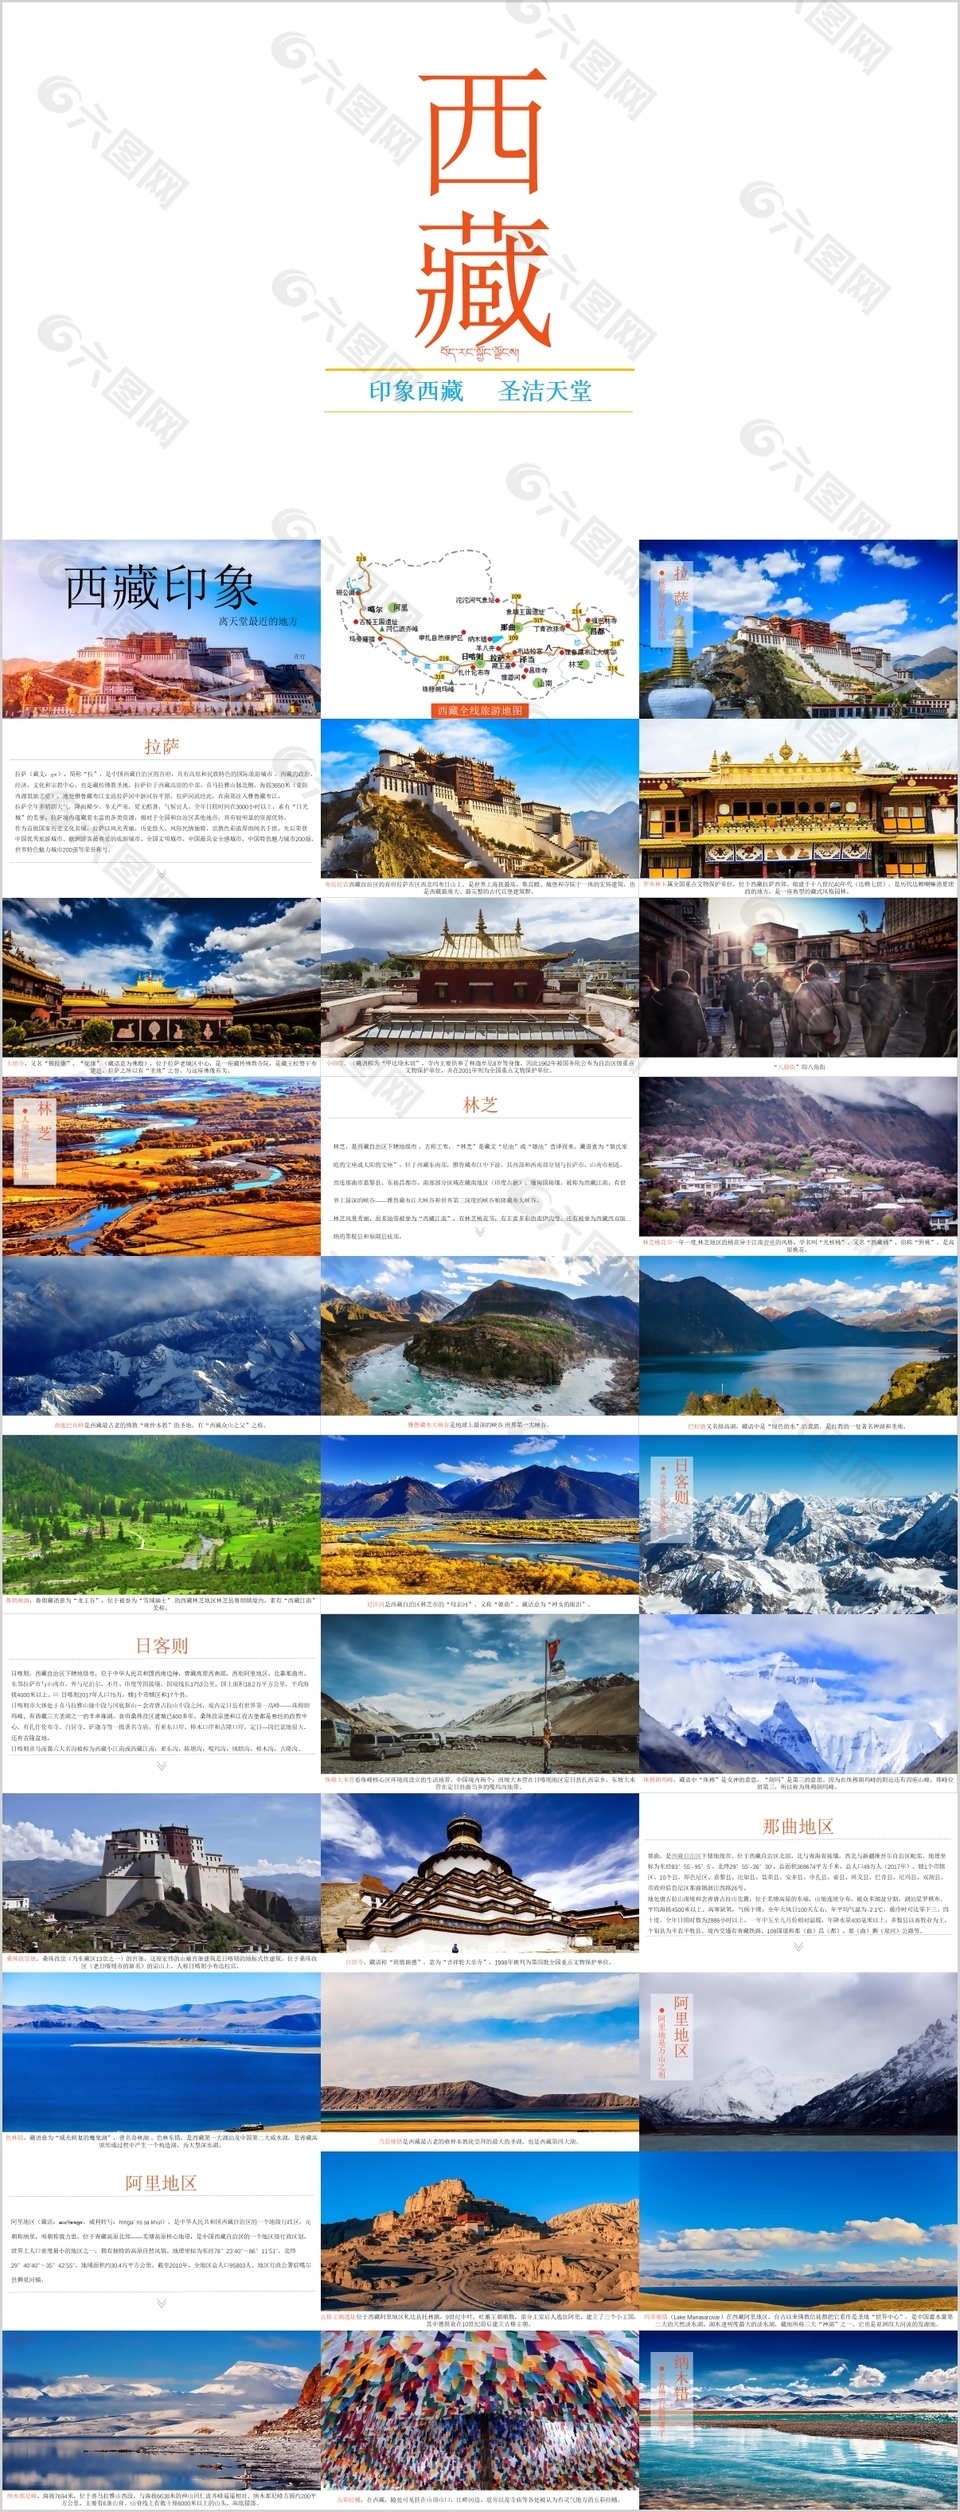 印象西藏神奇多元旅游宣传介绍PPT模板